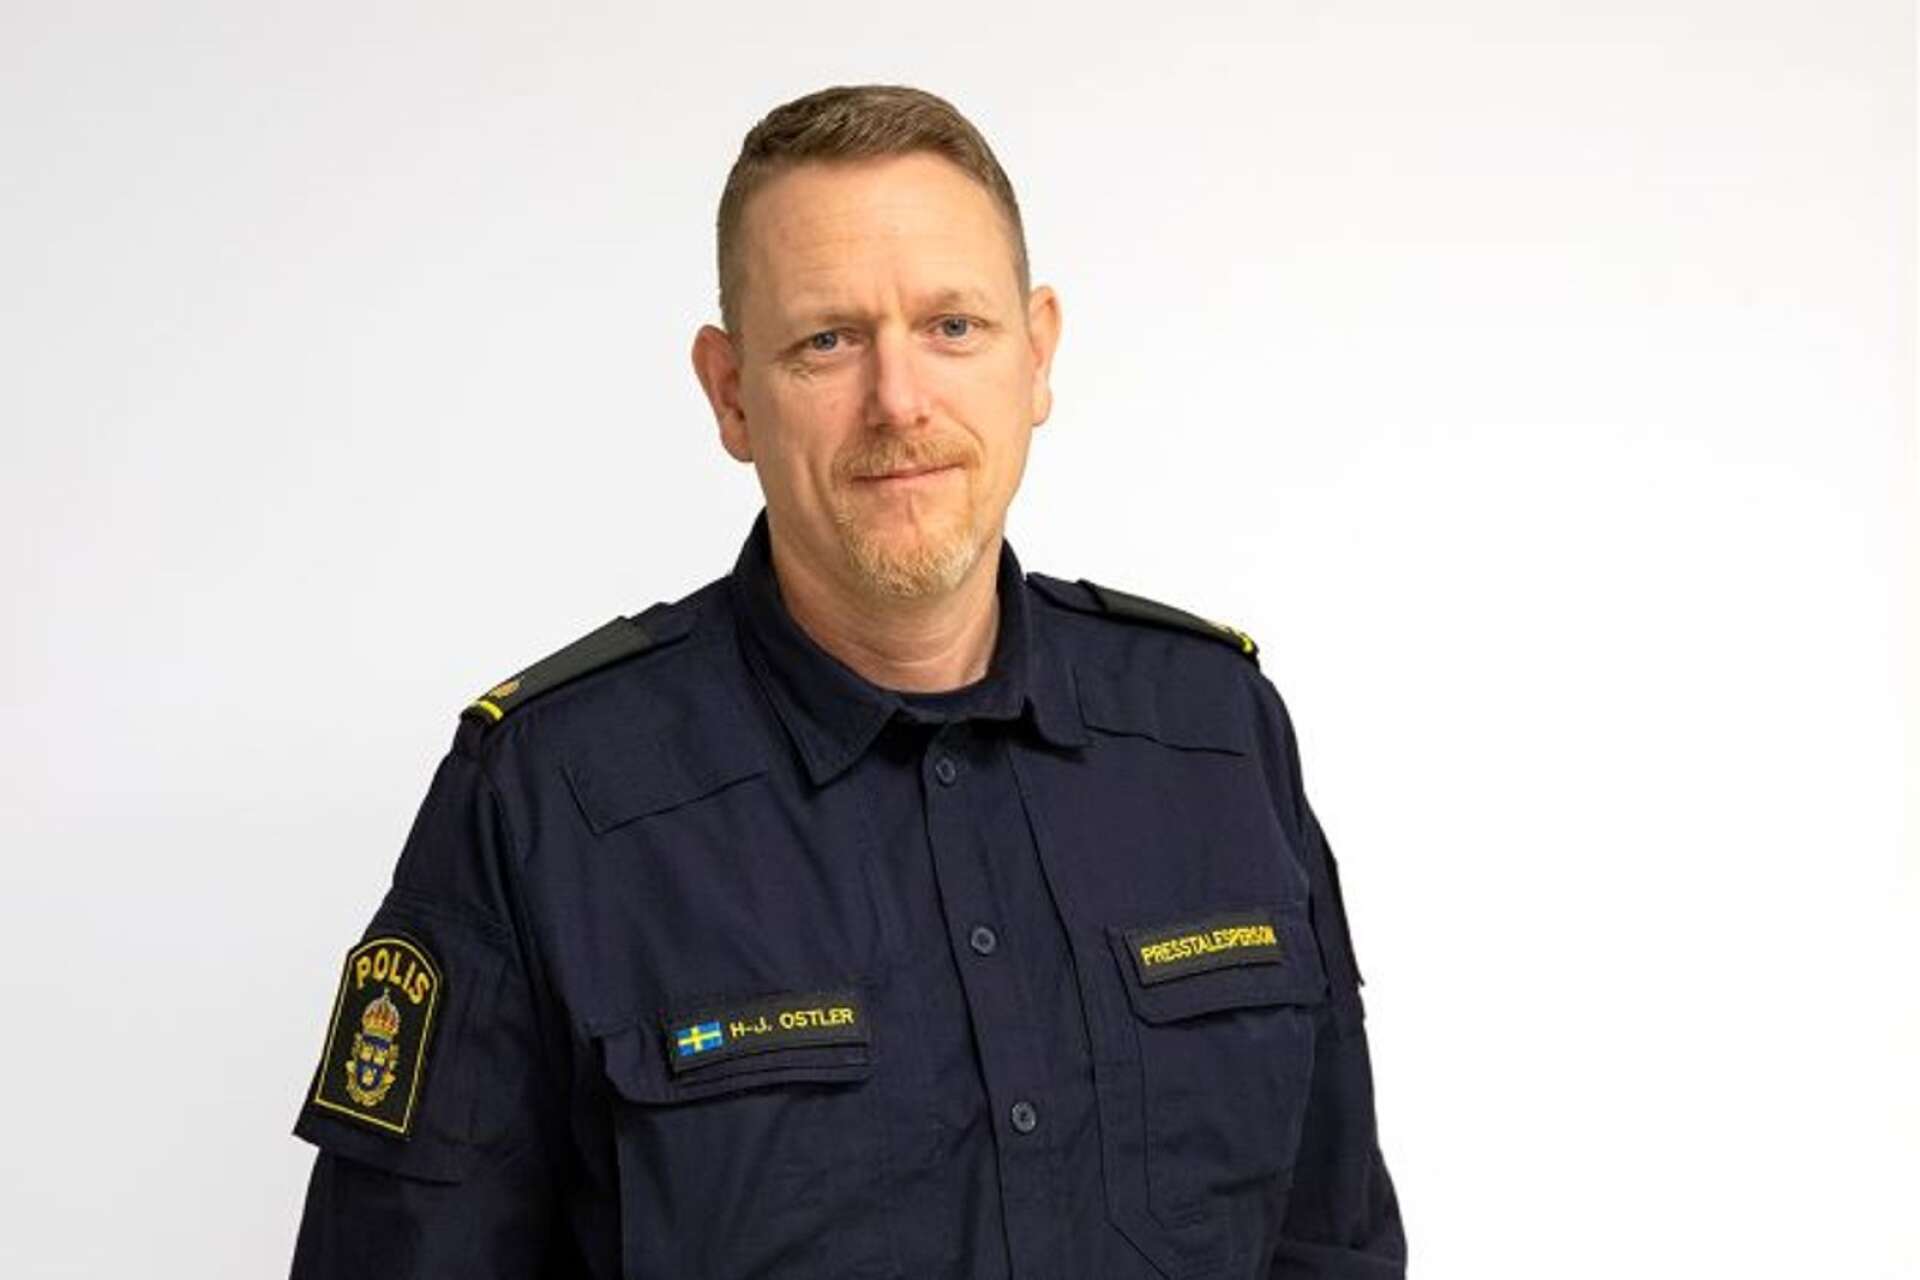 Hans-Jörgen Ostler, polisens presstalesperson, varnar för riskerna med att köpa och använda droger.